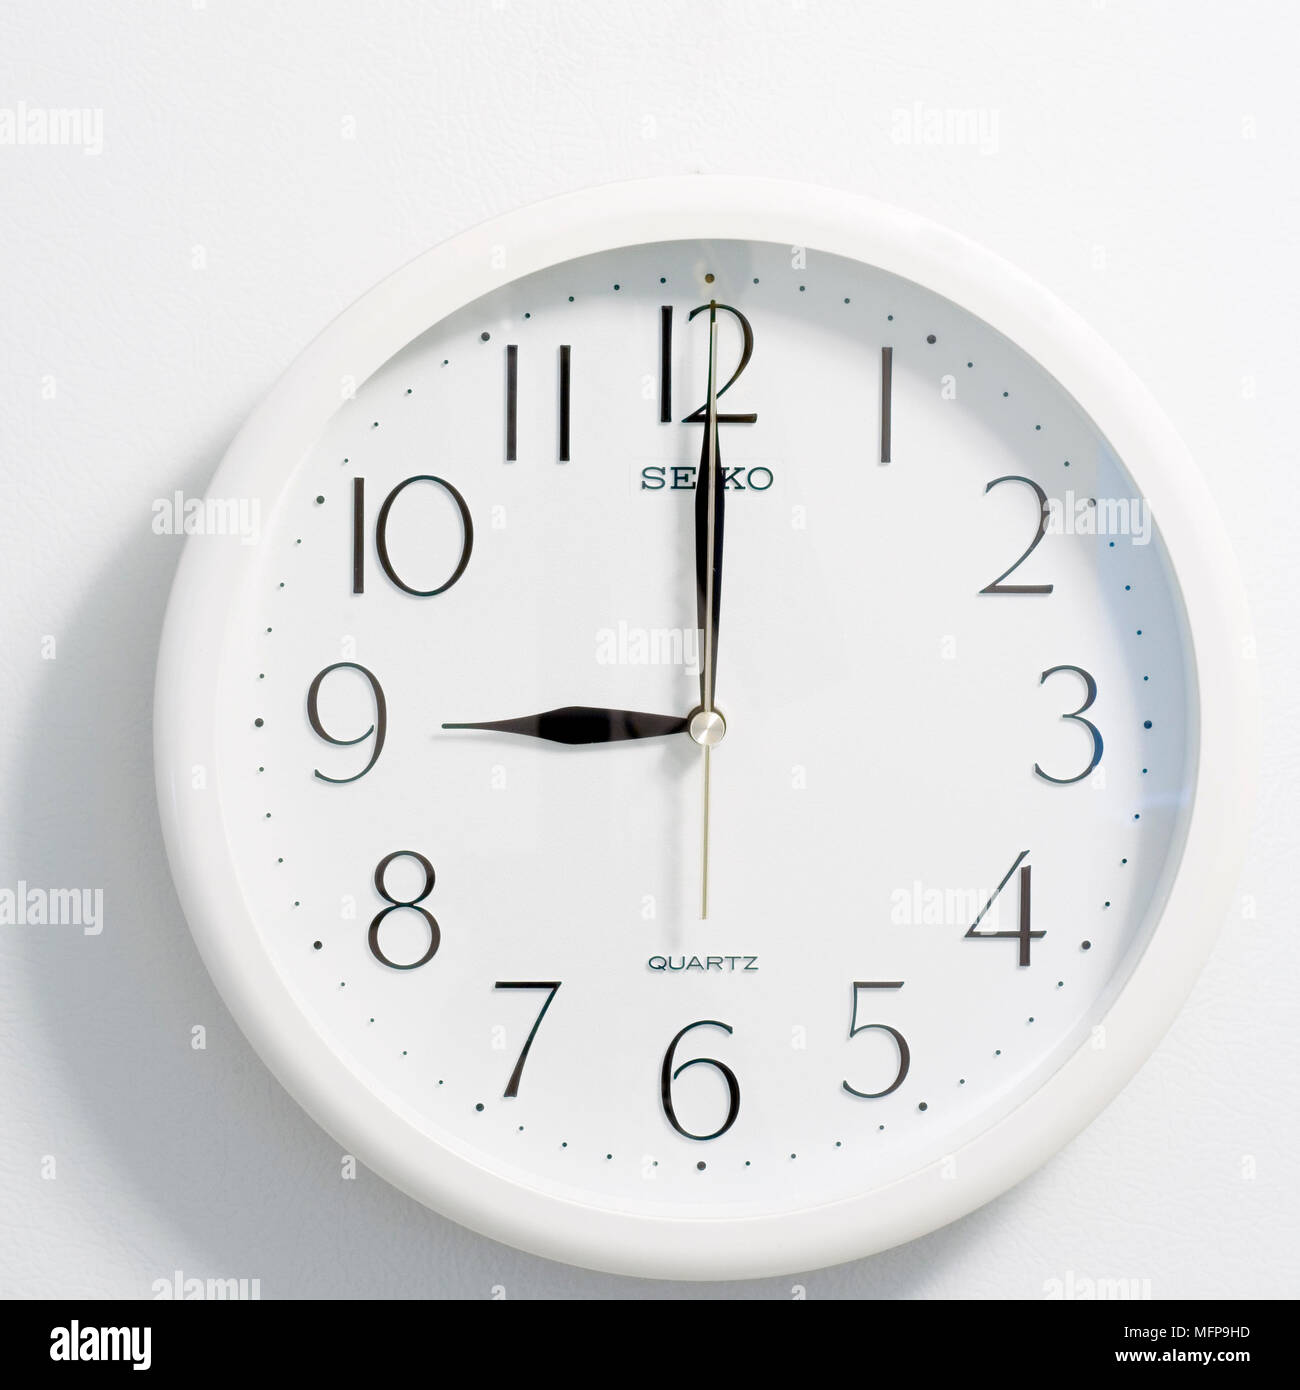 Nahaufnahme des Gesichts des modernen clock Stil, runde weiße und schwarze Zifferblatt zur Zeit neun Uhr Stockfoto